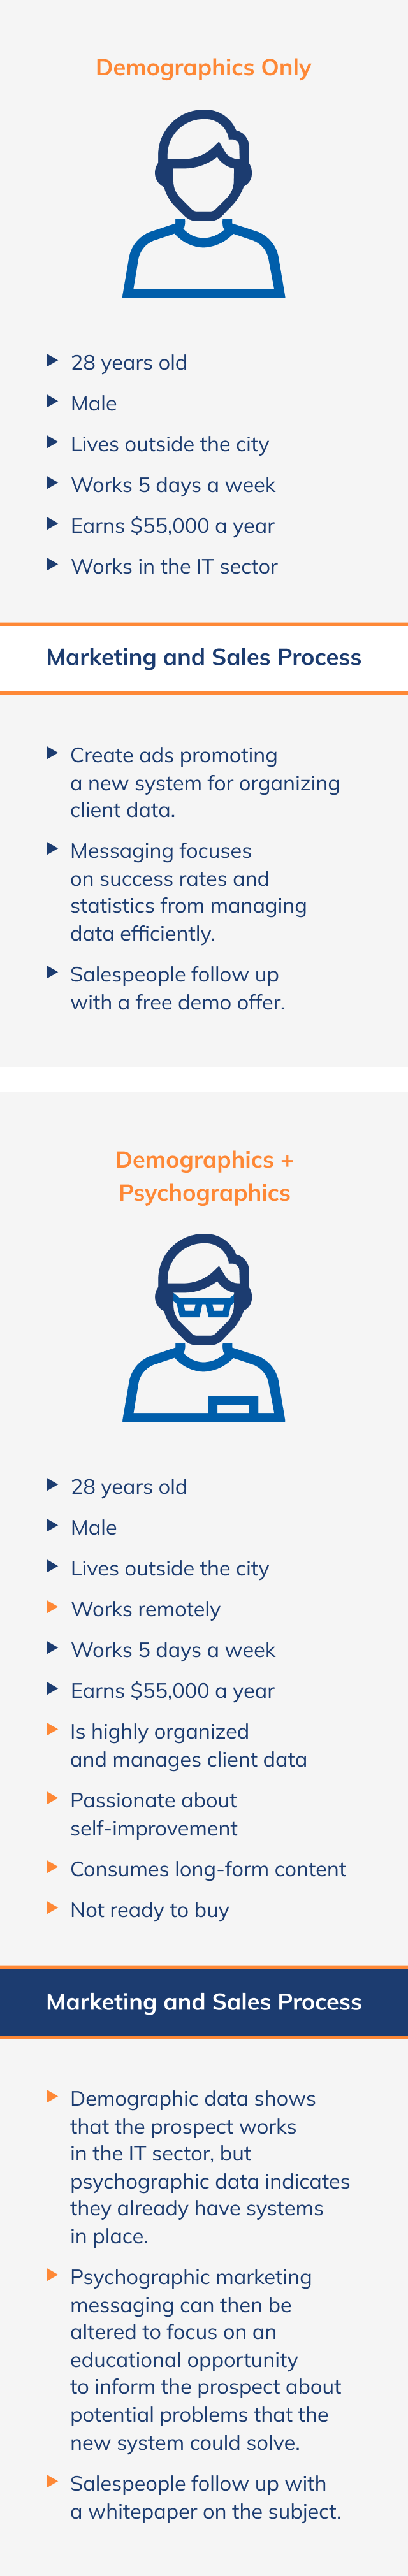 Demographics vs. Psychographics